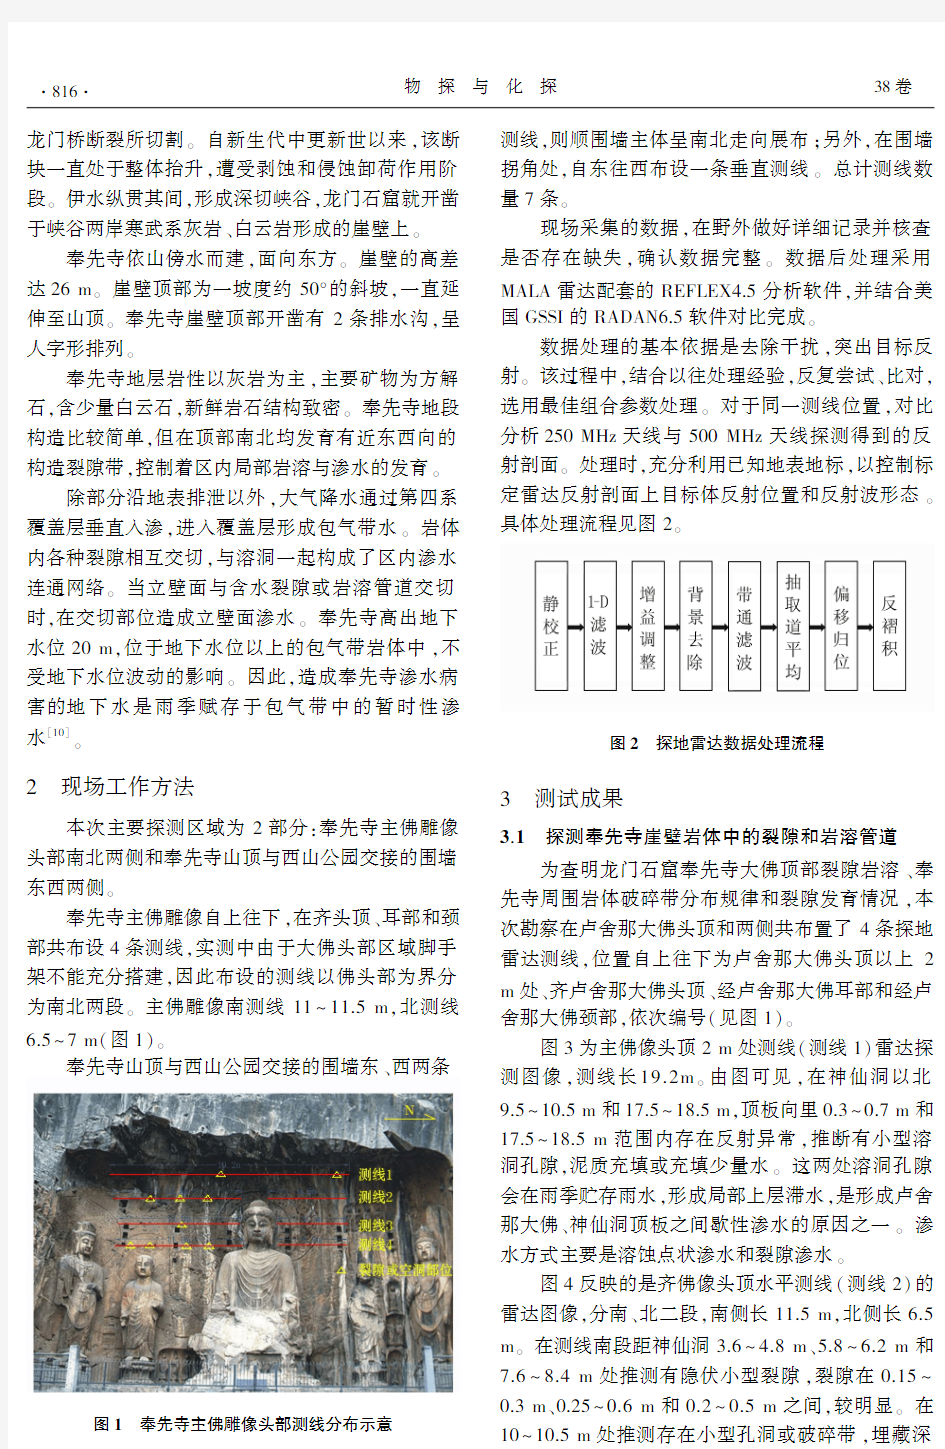 探地雷达探测技术在奉先寺保护工程中的应用